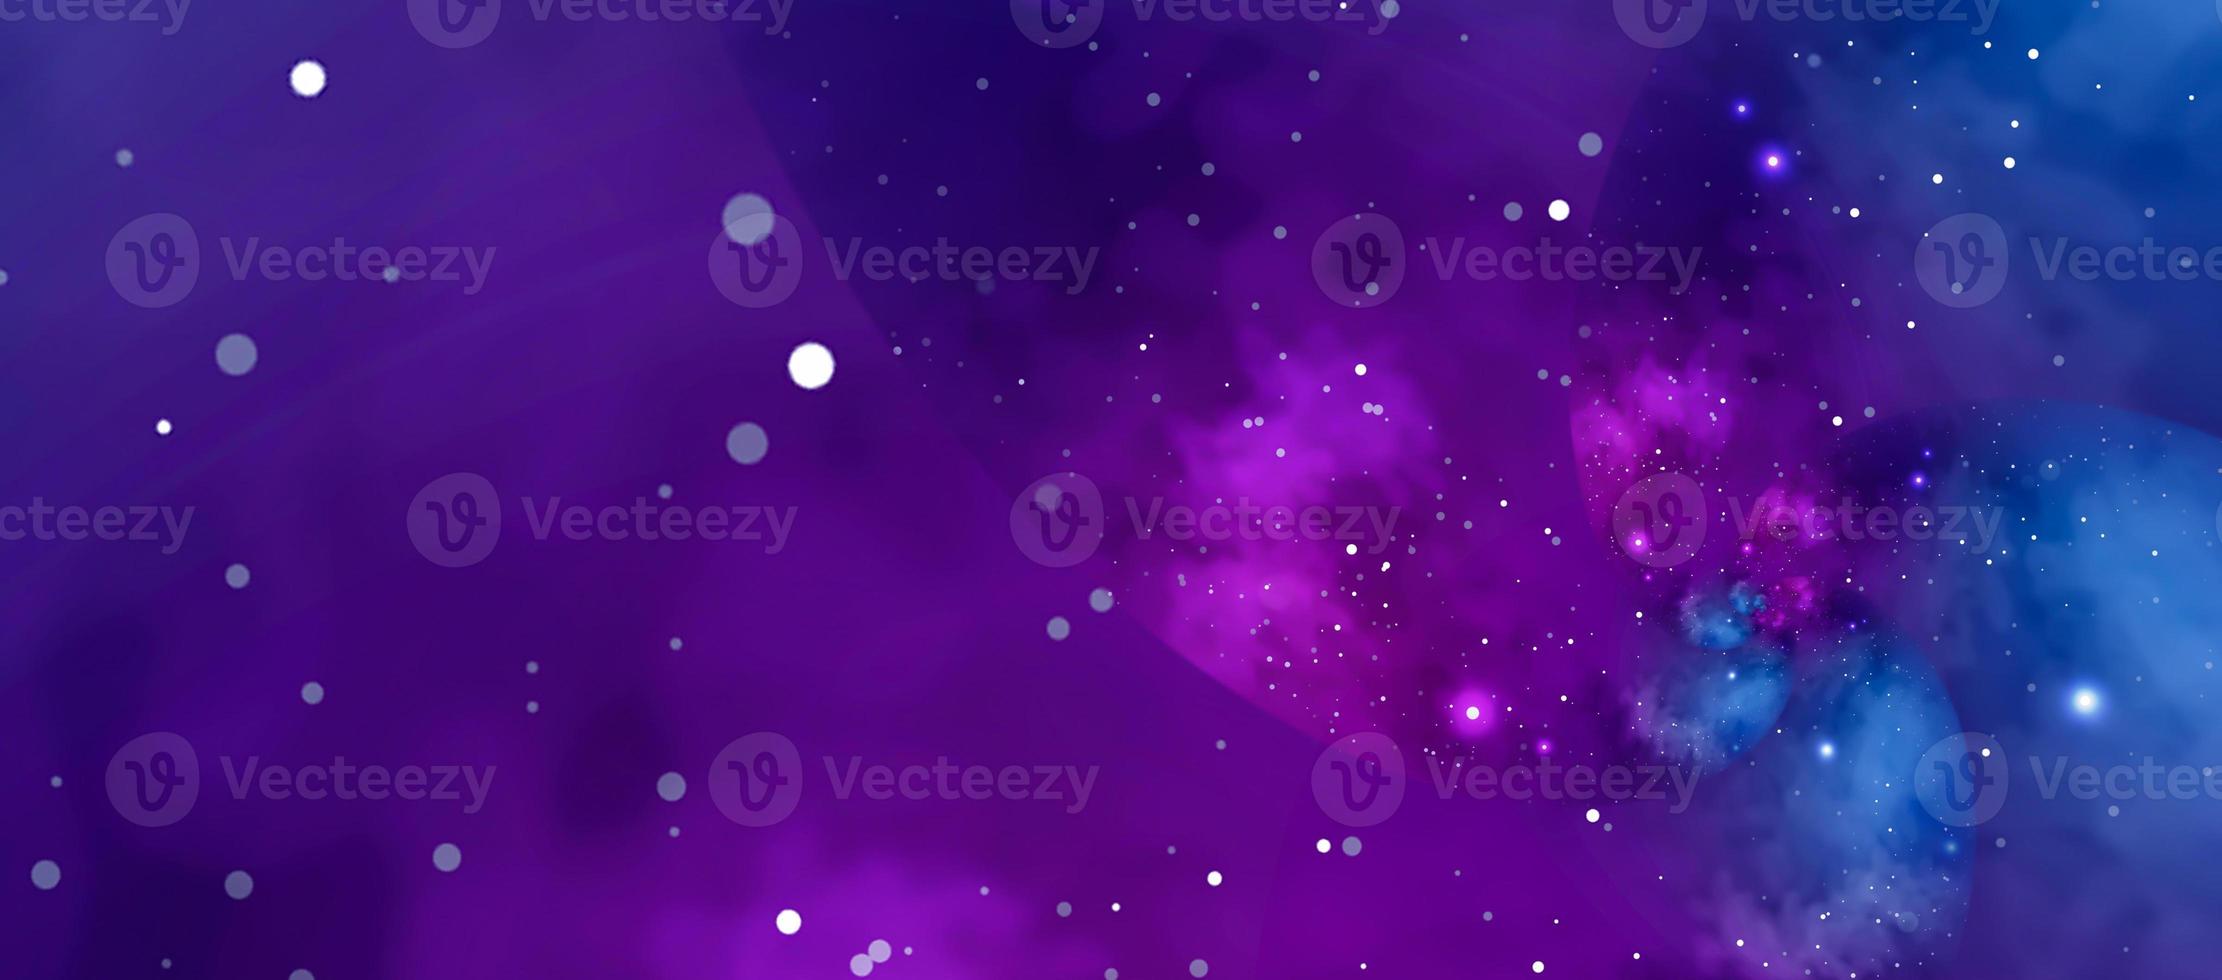 fondo estrellado con nebulosa azul y violeta. concepto de espacio, astronomía, galaxia, universo, ciencia foto